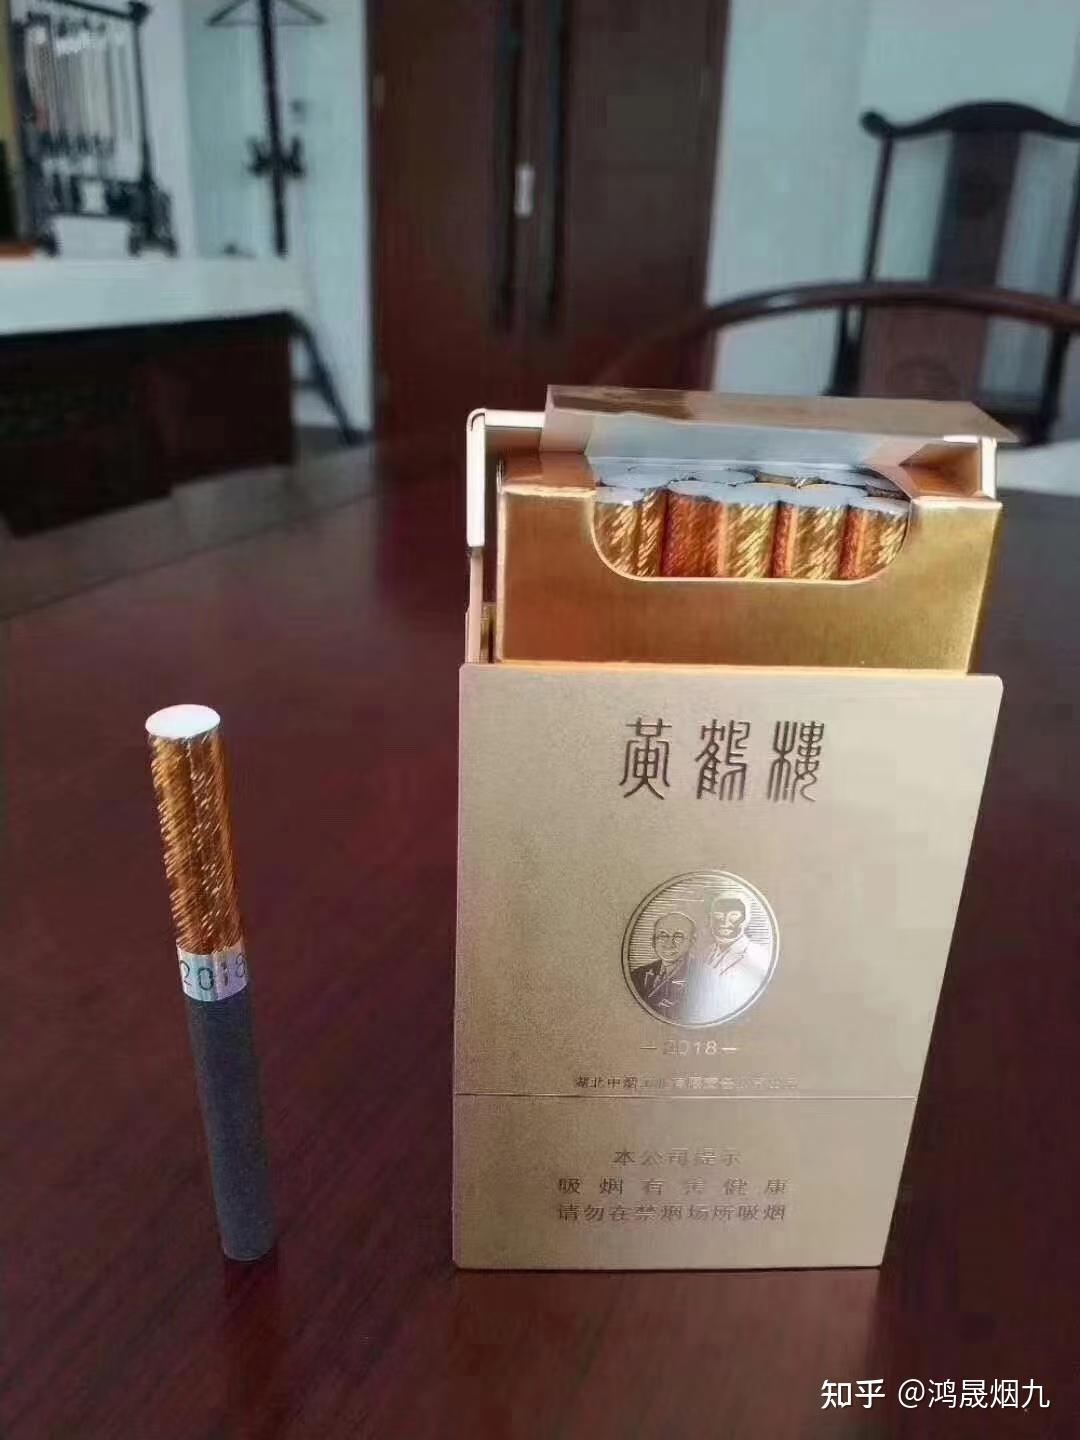 黄鹤楼2018大金砖价格参数及图片黄鹤楼最贵的香烟中国十大最贵香烟